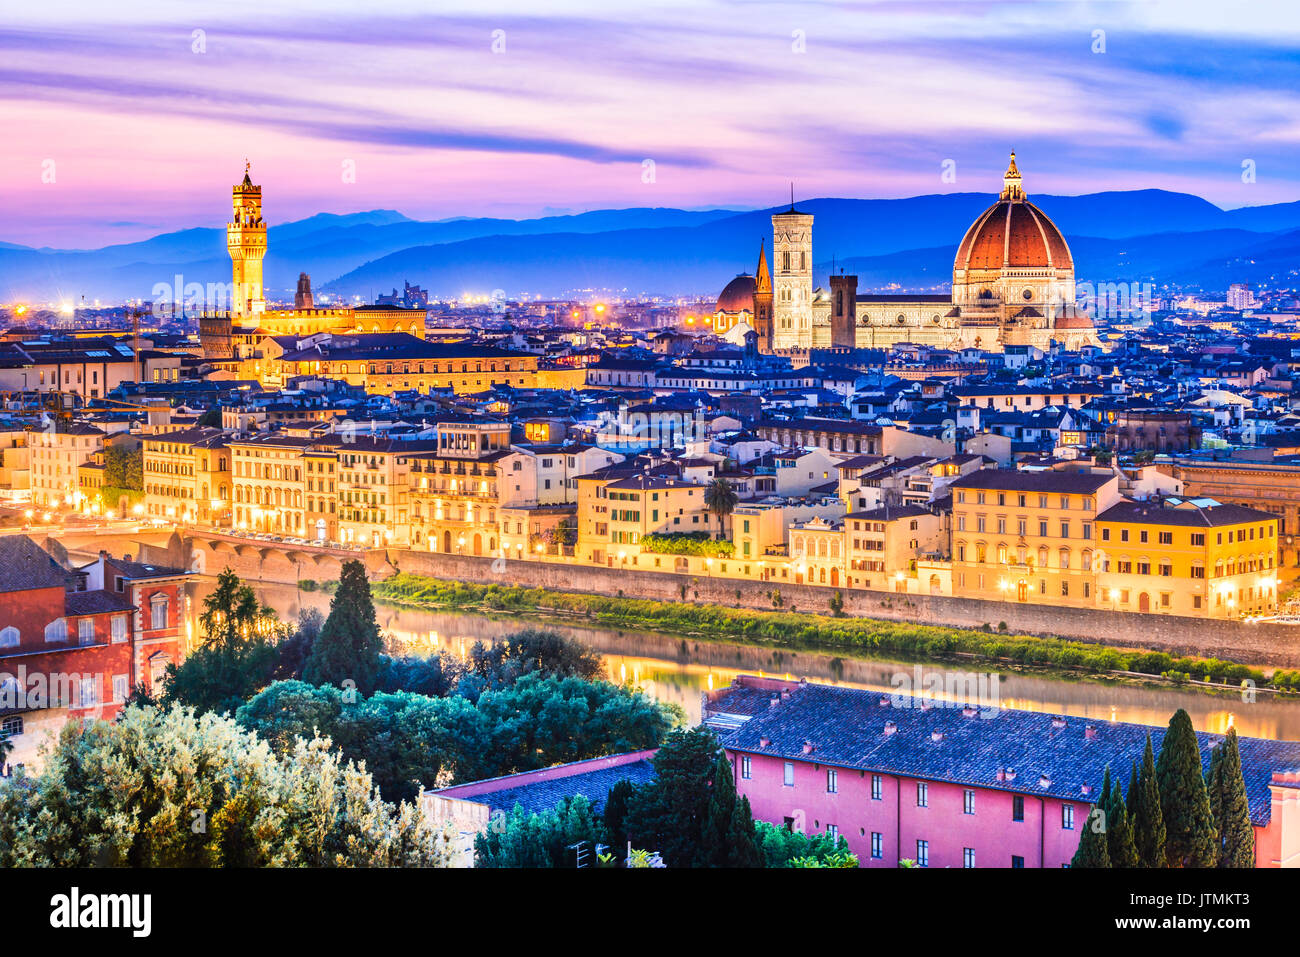 Florencia, la toscana - Paisaje nocturno con el duomo de Santa María del Fiori, arquitectura renacentista en Italia. Foto de stock